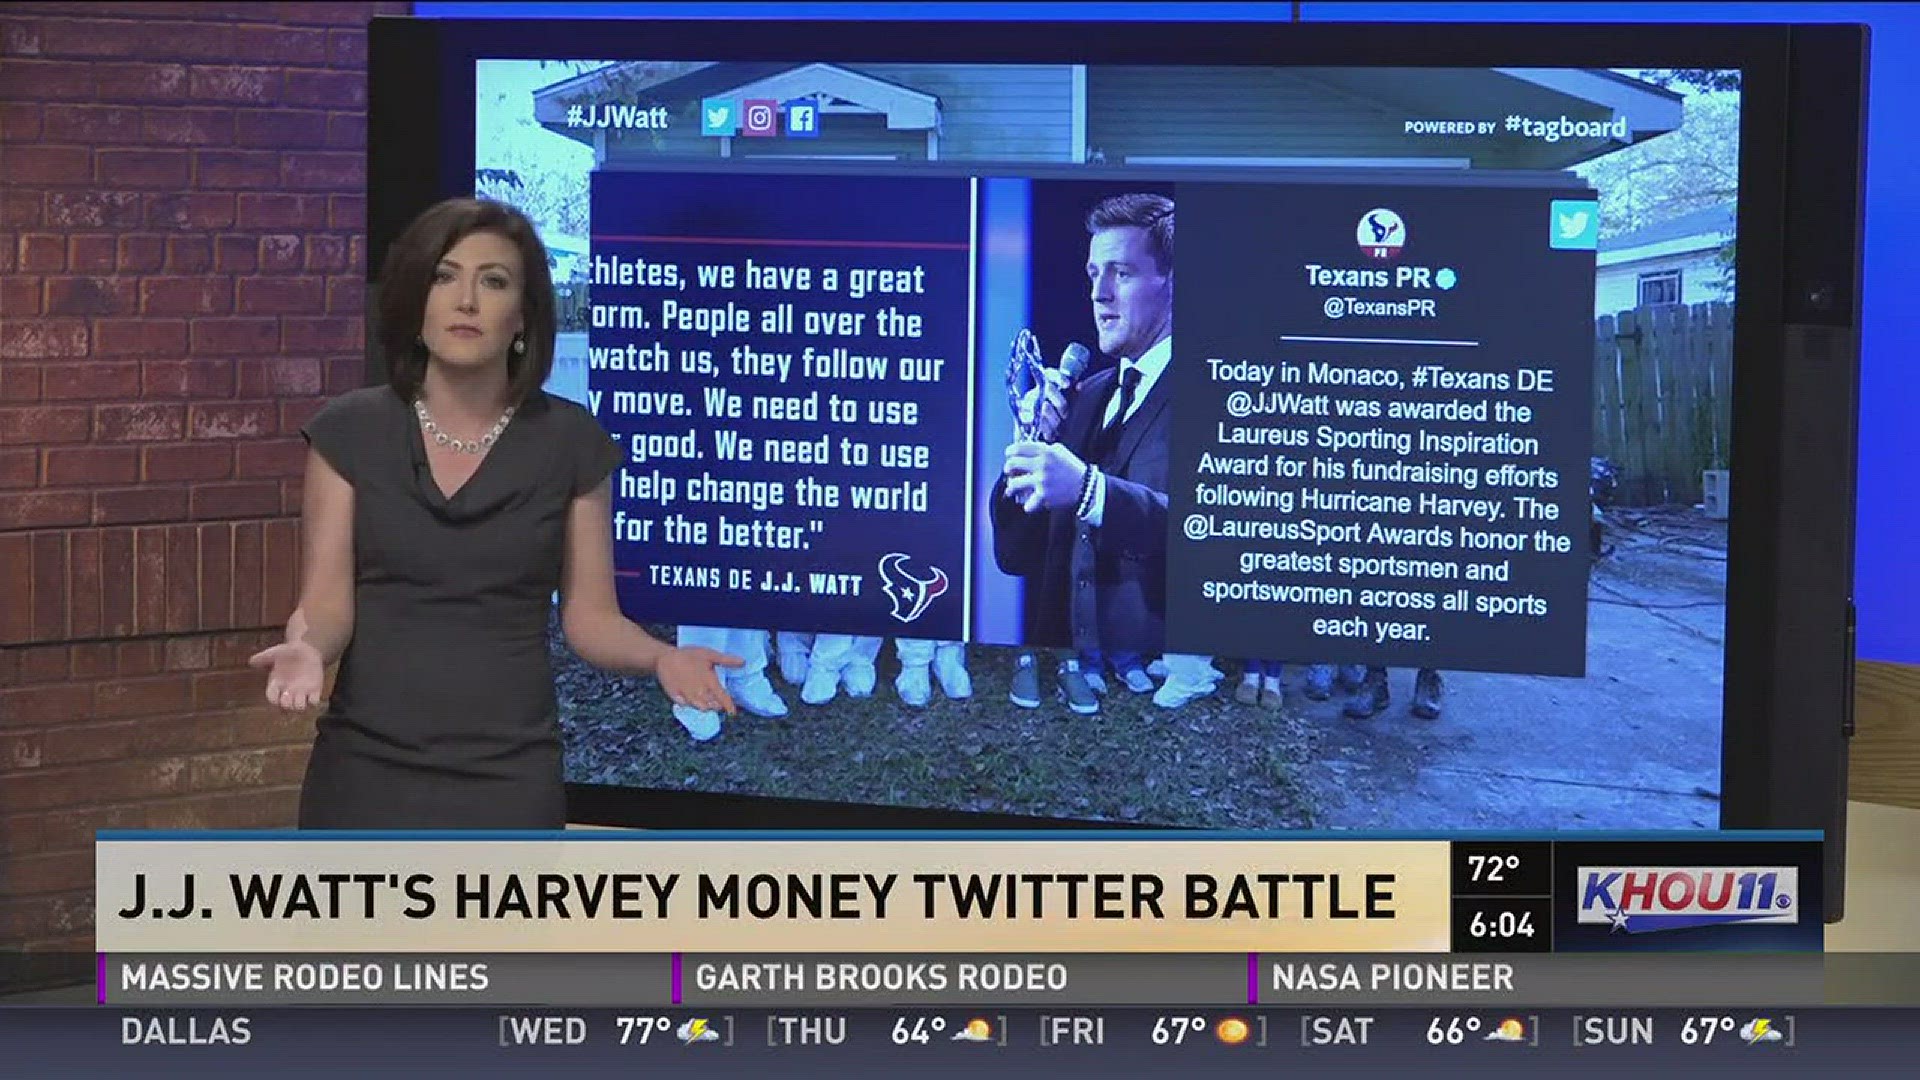 Twitter defends JJ Watt after woman questions foundation spending